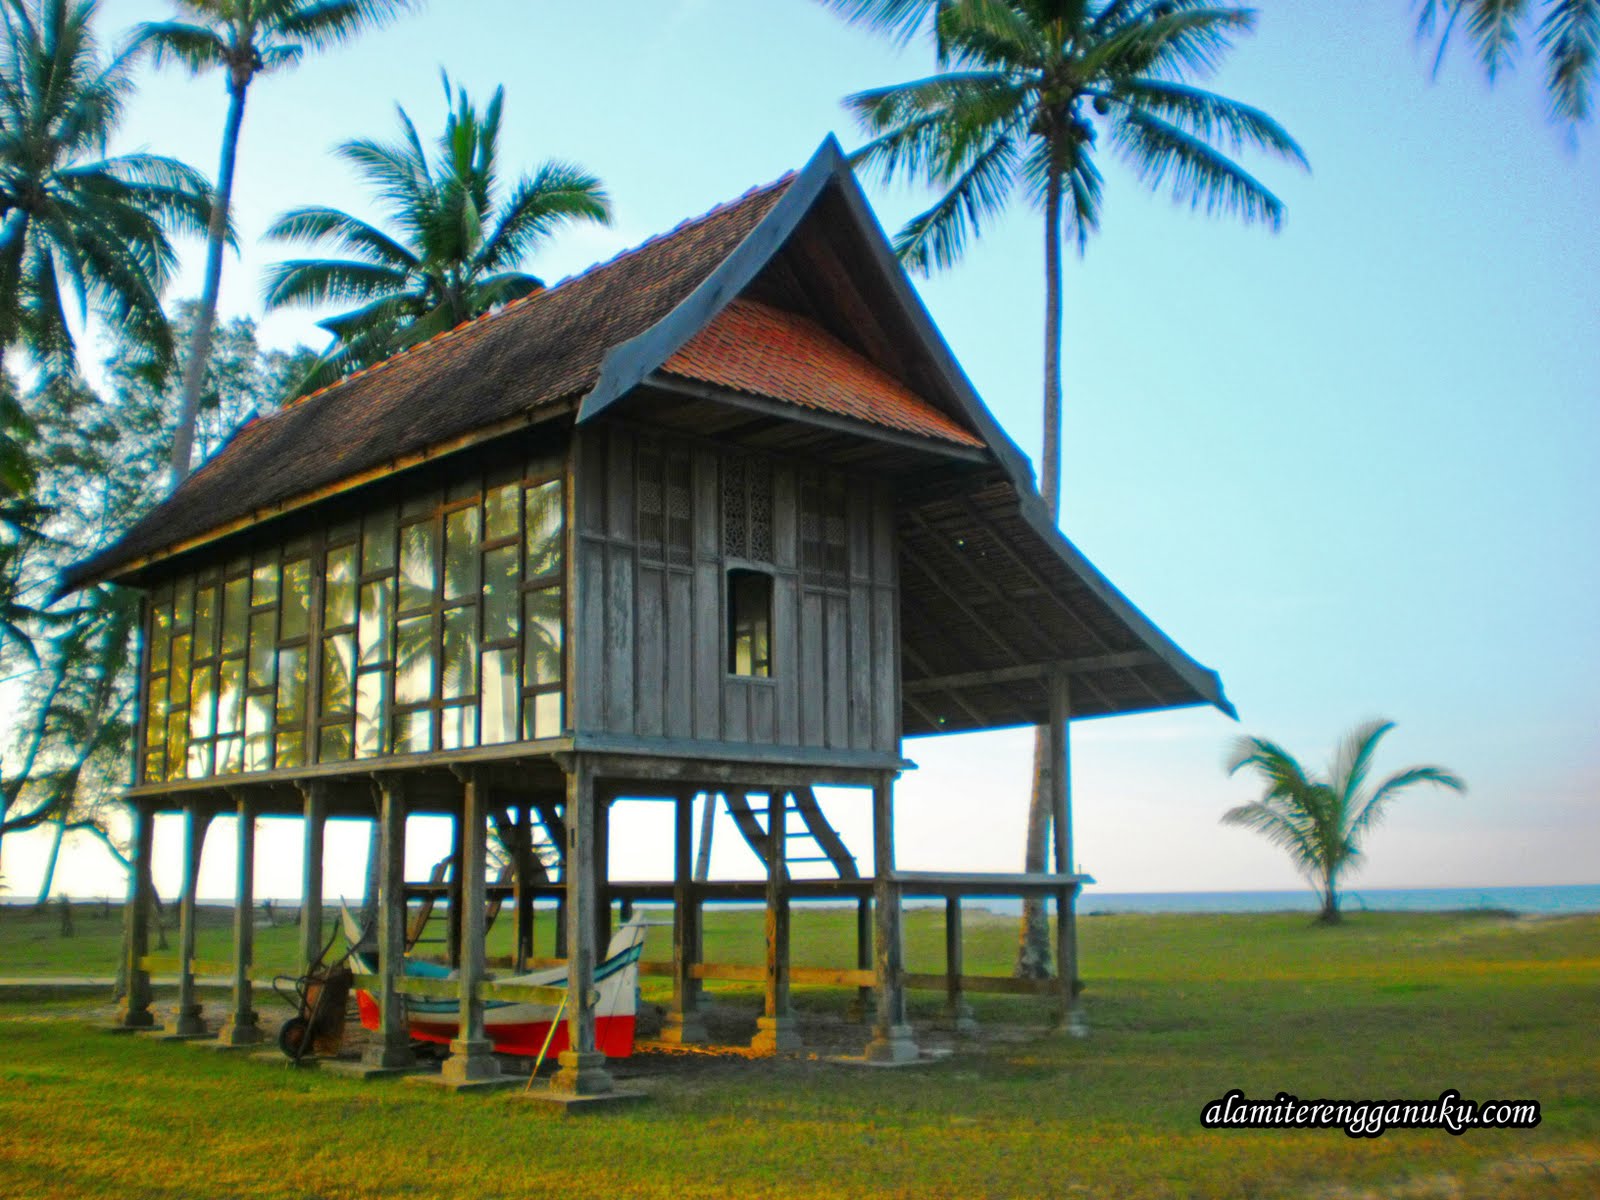 Alami Terengganu Pantai Mangkuk Setiu